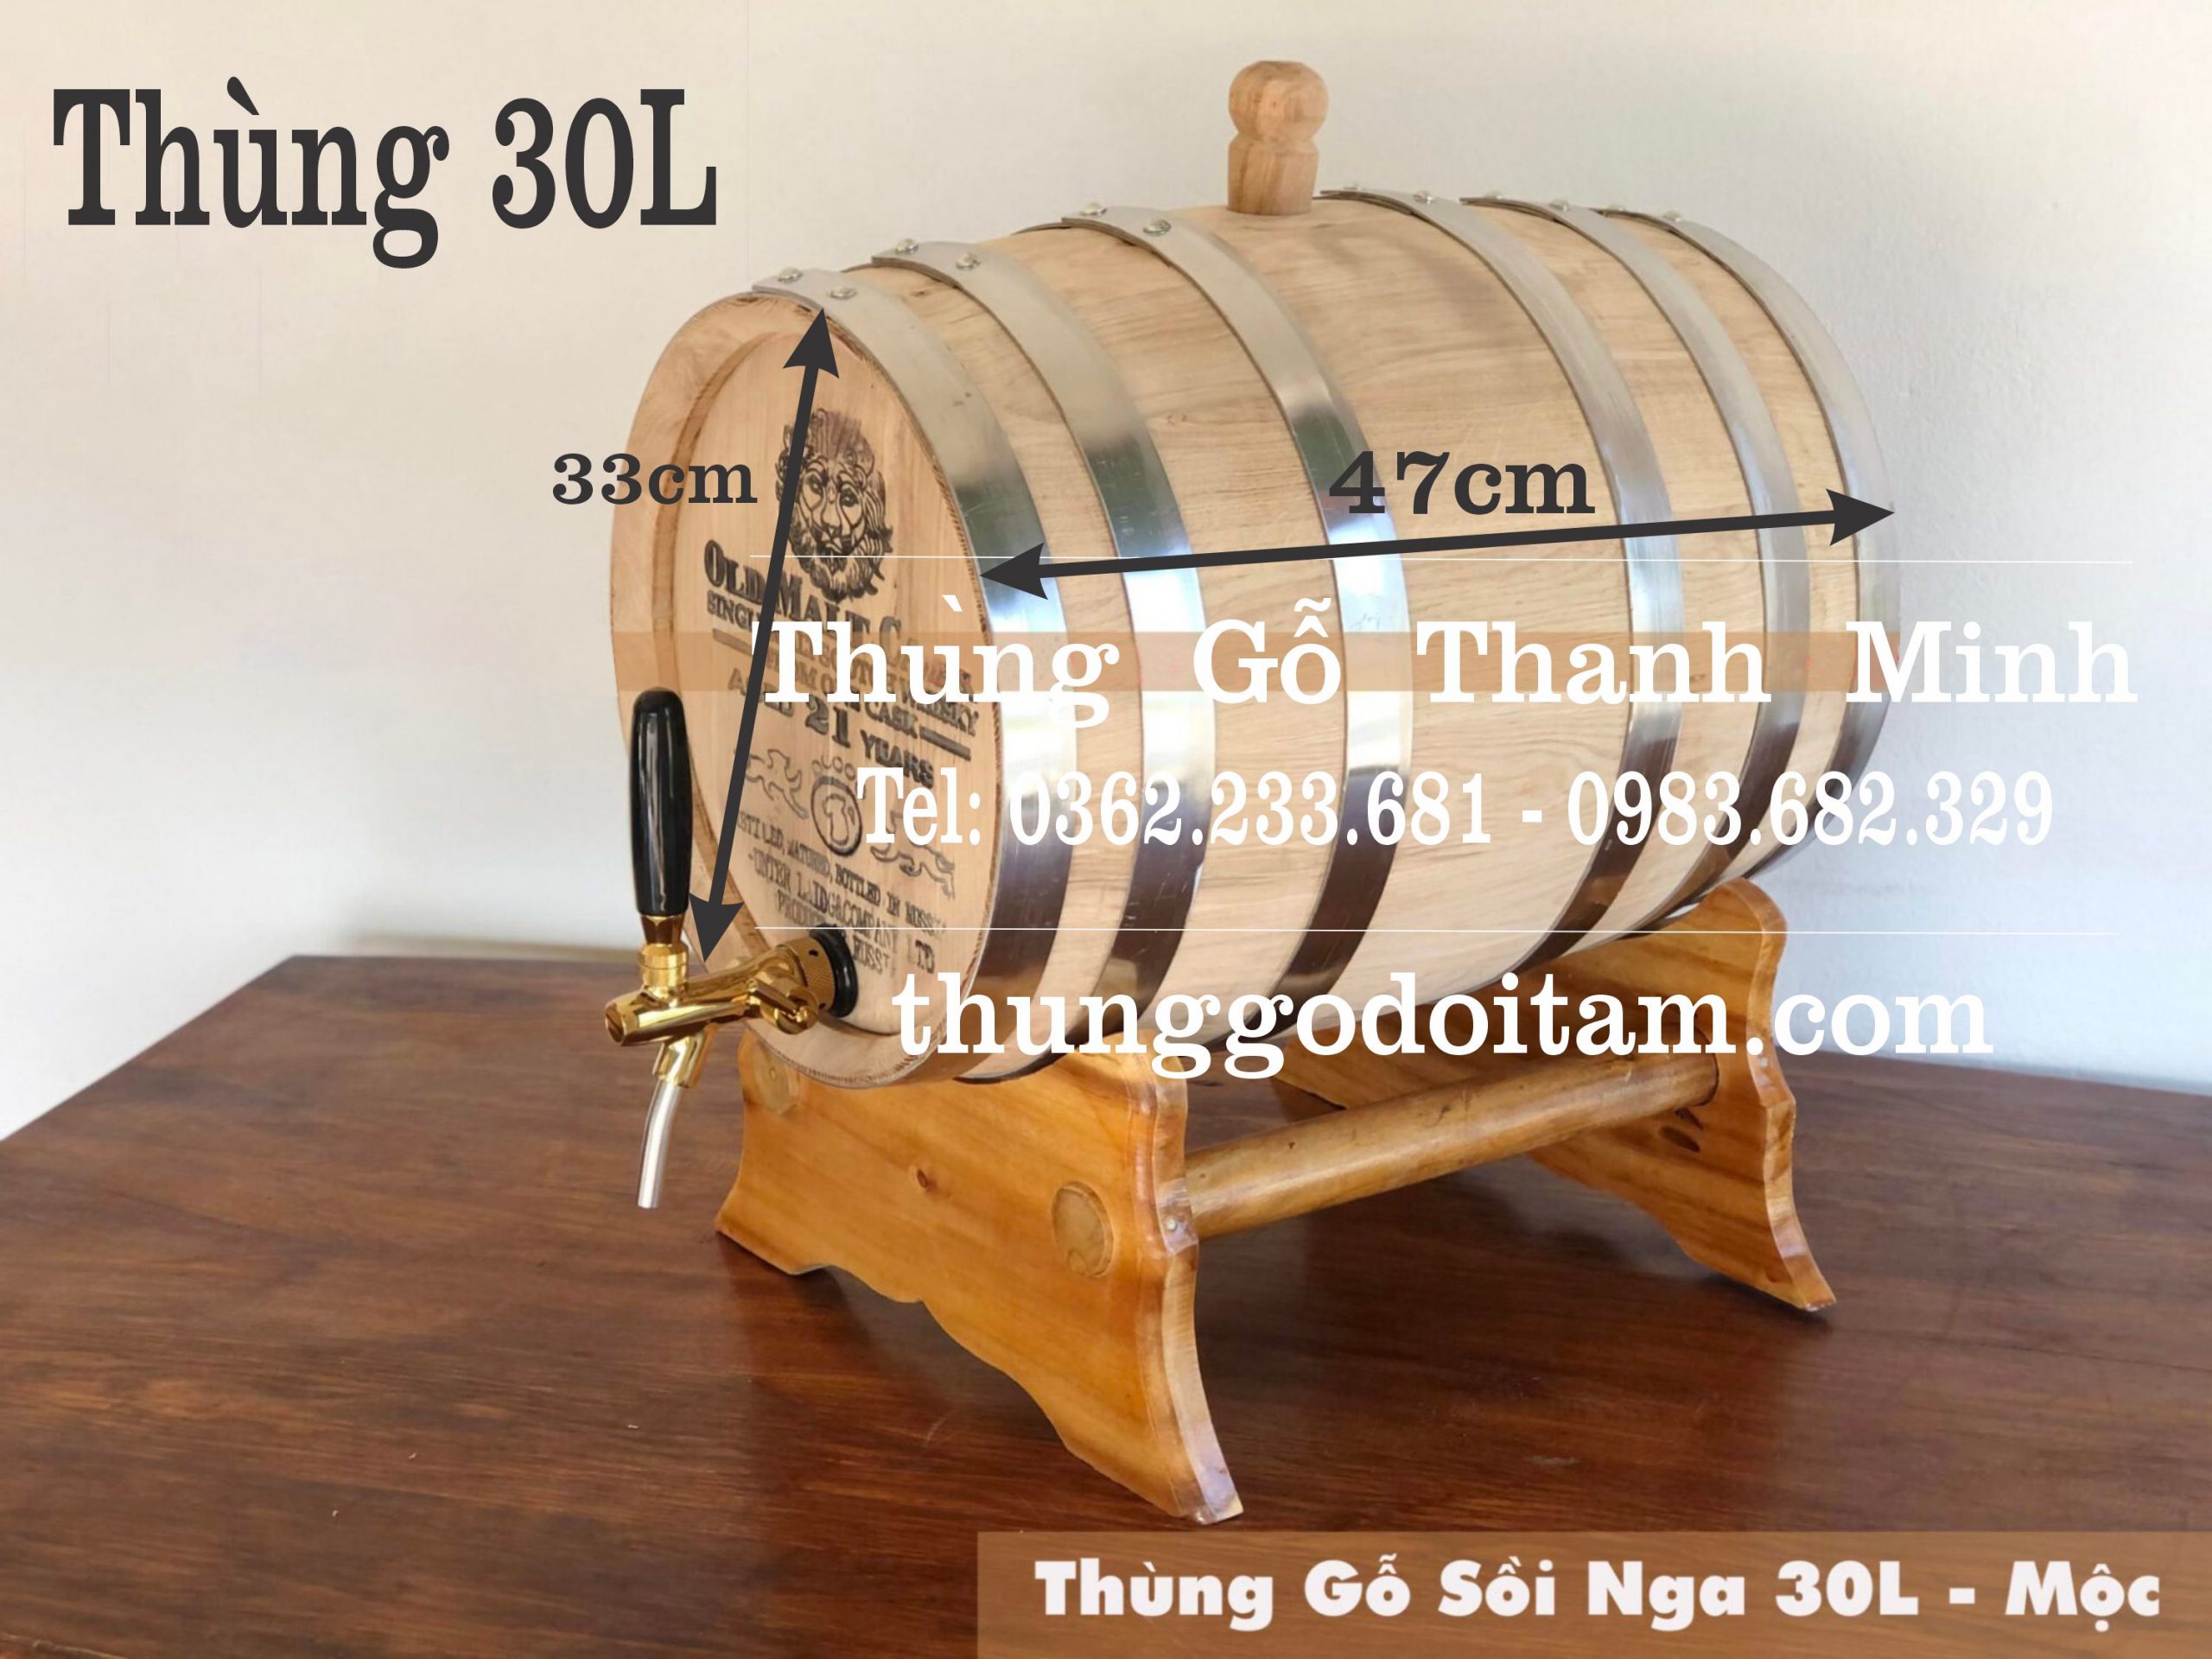 Thùng gỗ sồi 30L để mộc - Xưởng Thanh Minh